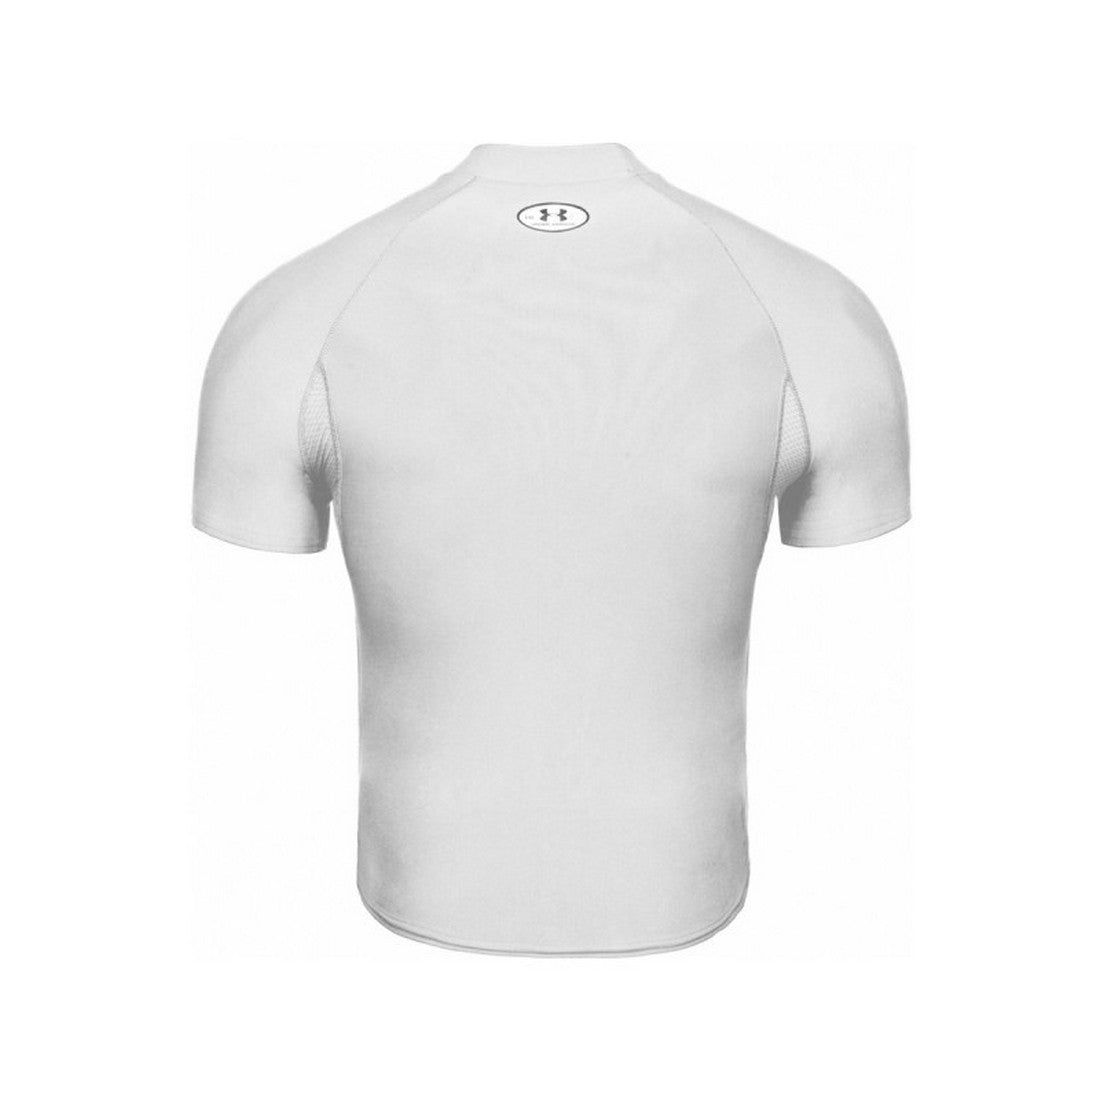 Las mejores ofertas en Under Armour Manga Corta Blanco Activewear Camisetas  para Hombres